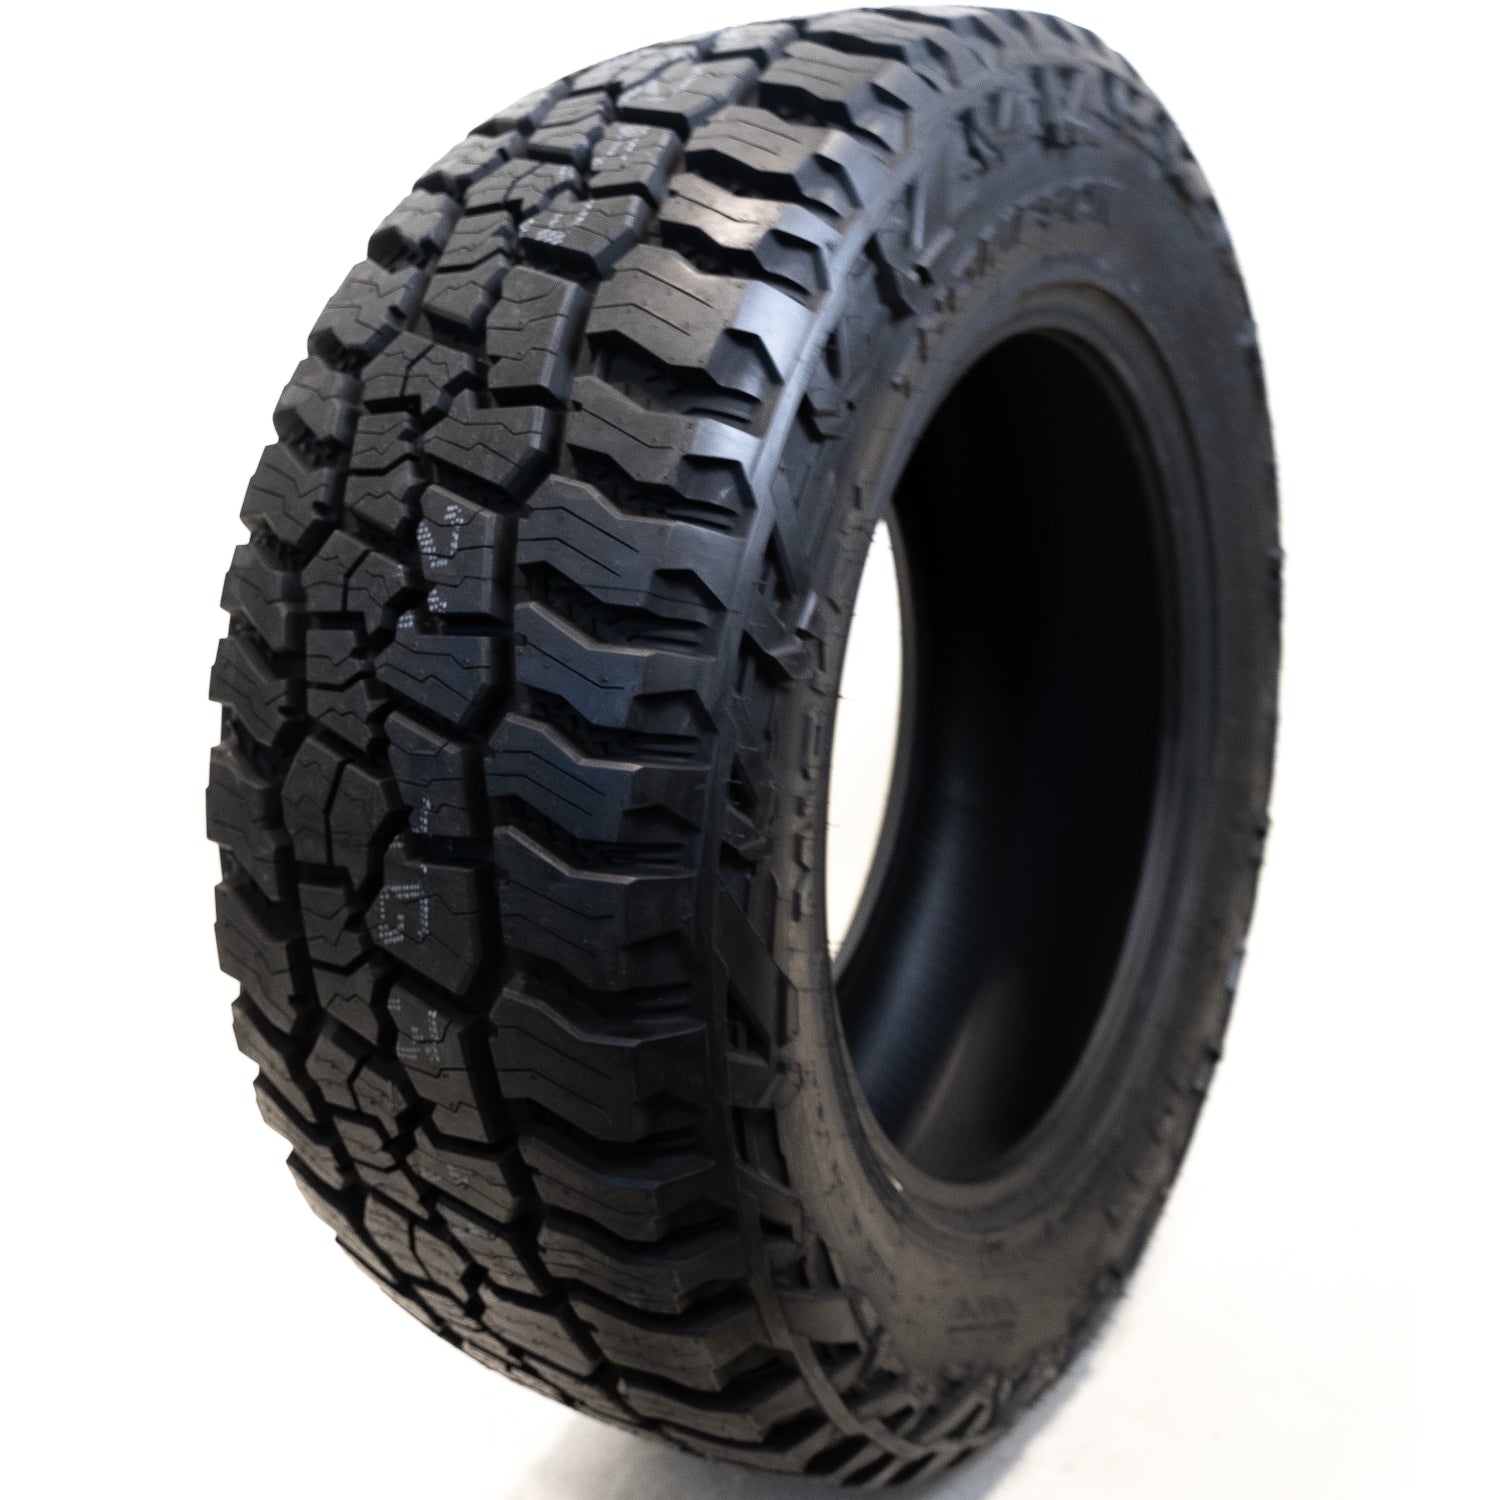 MICKEY THOMPSON BAJA BOSS A/T 265/60R18 (30.8X10.4R 18) Tires